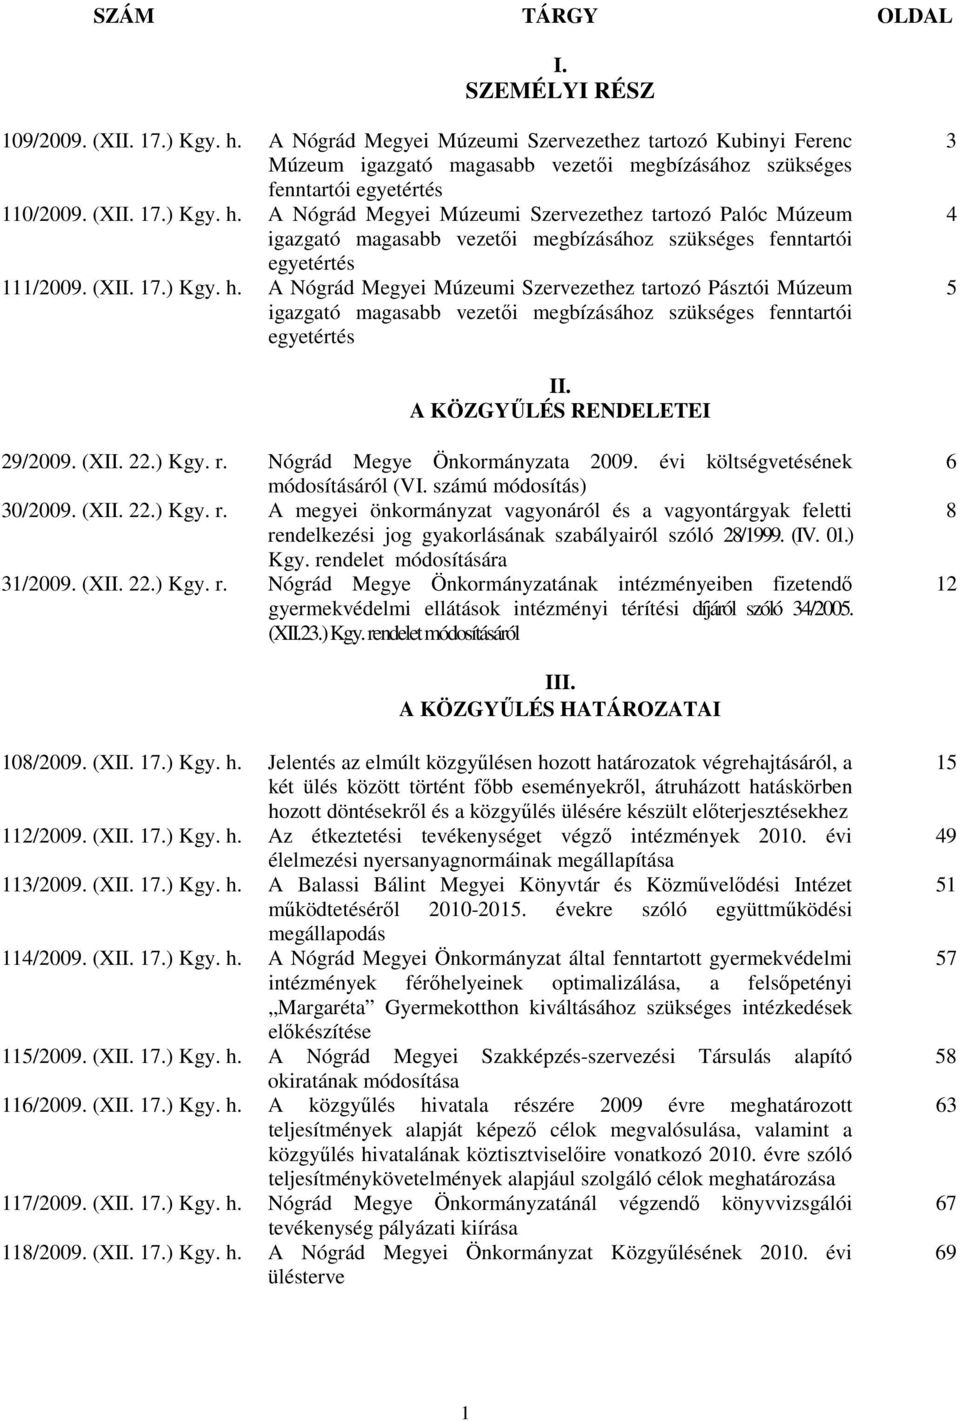 A Nógrád Megyei Múzeumi Szervezethez tartozó Palóc Múzeum igazgató magasabb vezetıi megbízásához szükséges fenntartói egyetértés 111/2009. (XII. 17.) Kgy. h.